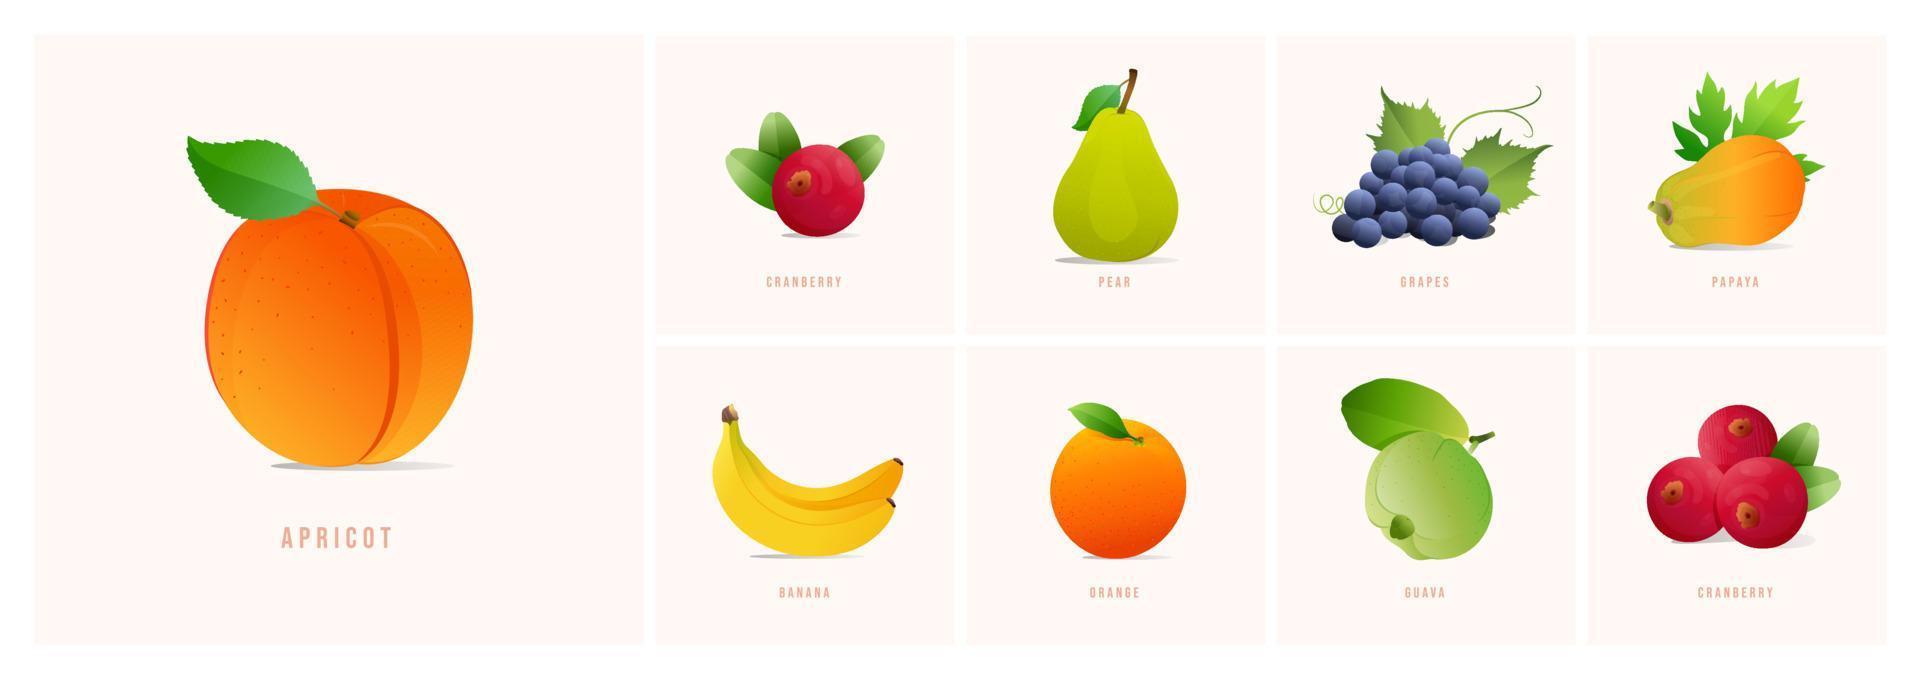 conjunto de frutas, ilustrações vetoriais de estilo moderno. damasco, cranberry, banana, uvas mamão, pêra, goiaba, laranja etc. vetor